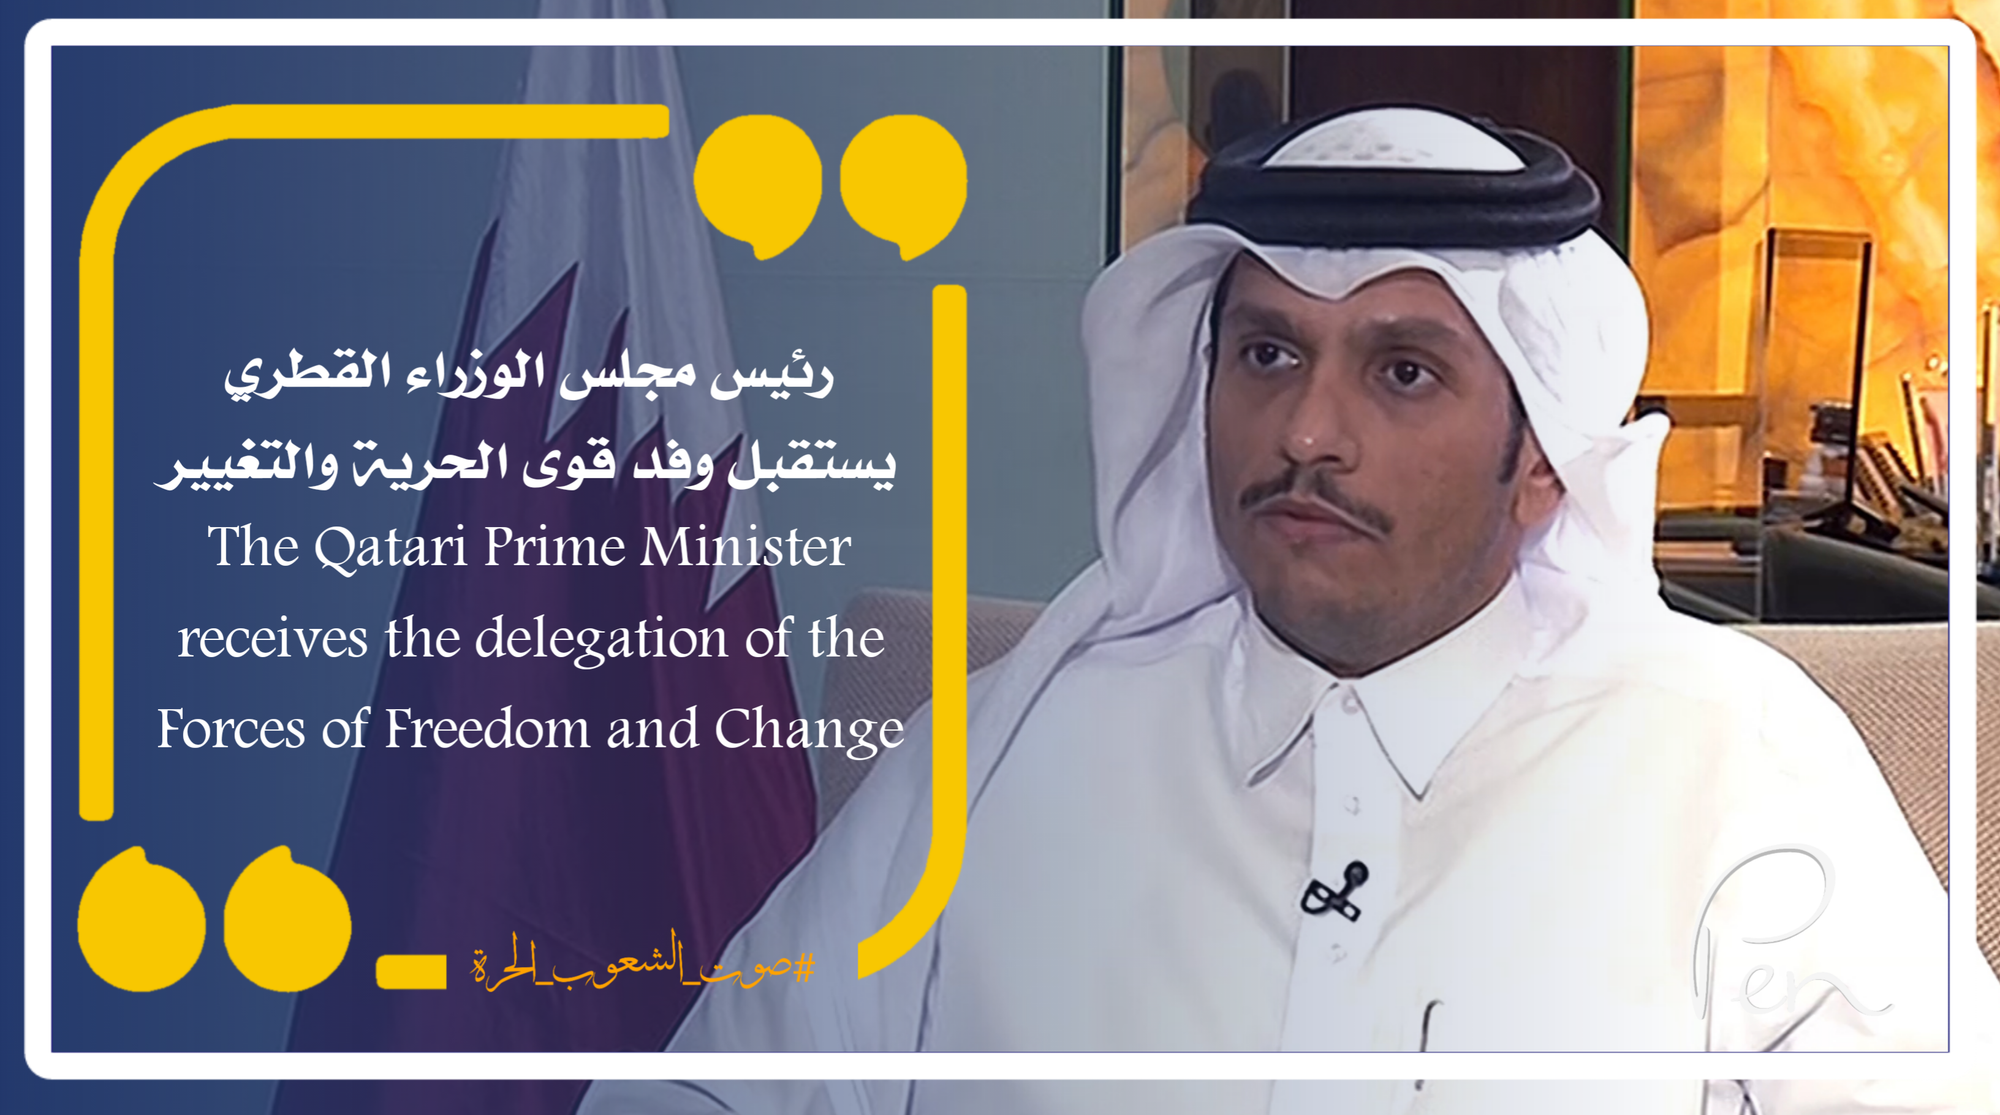 رئيس مجلس الوزراء القطري يستقبل وفد قوى الحرية والتغيير